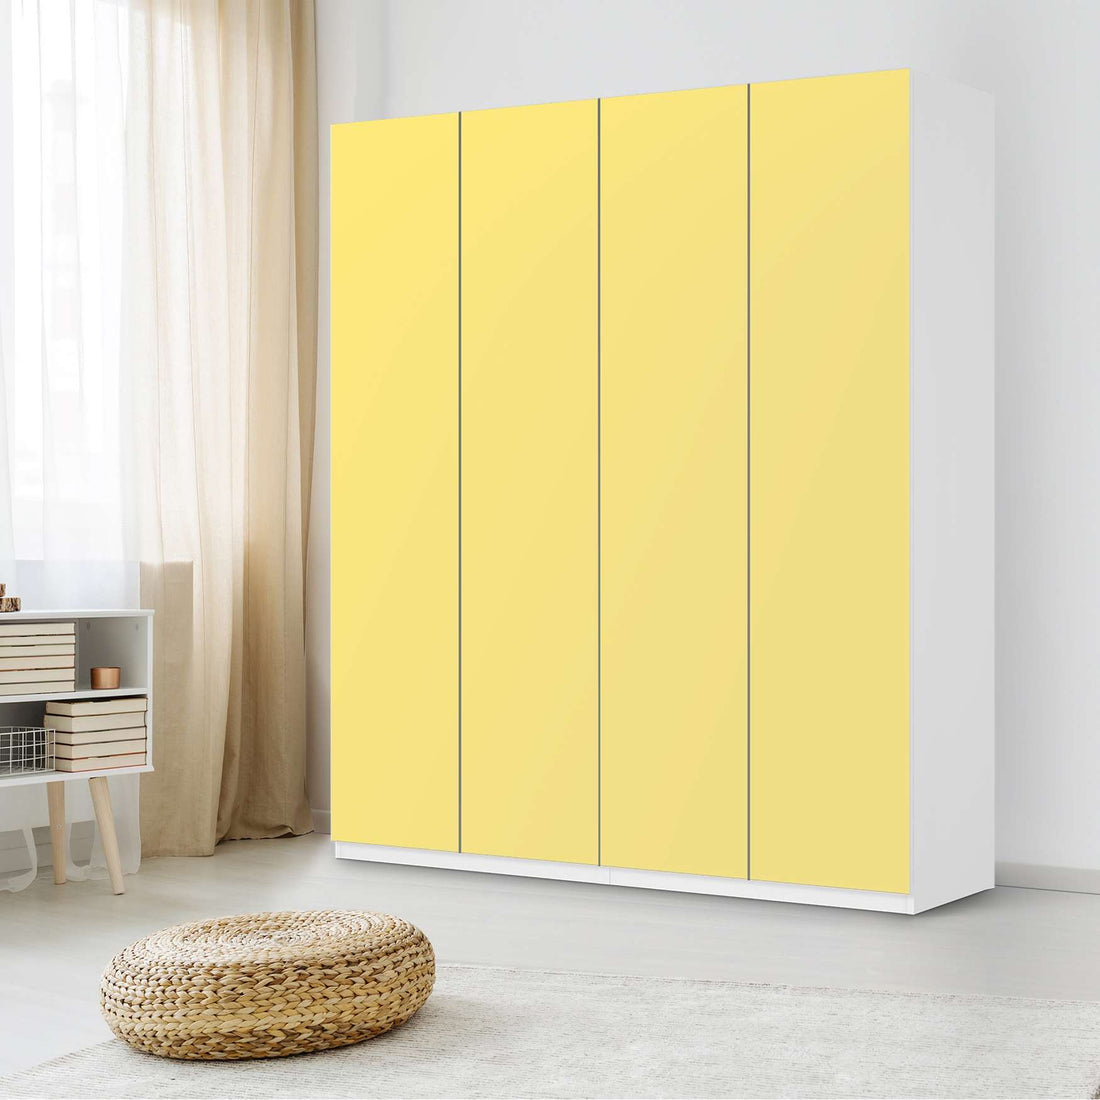 Möbelfolie Gelb Light - IKEA Pax Schrank 236 cm Höhe - 4 Türen - Schlafzimmer